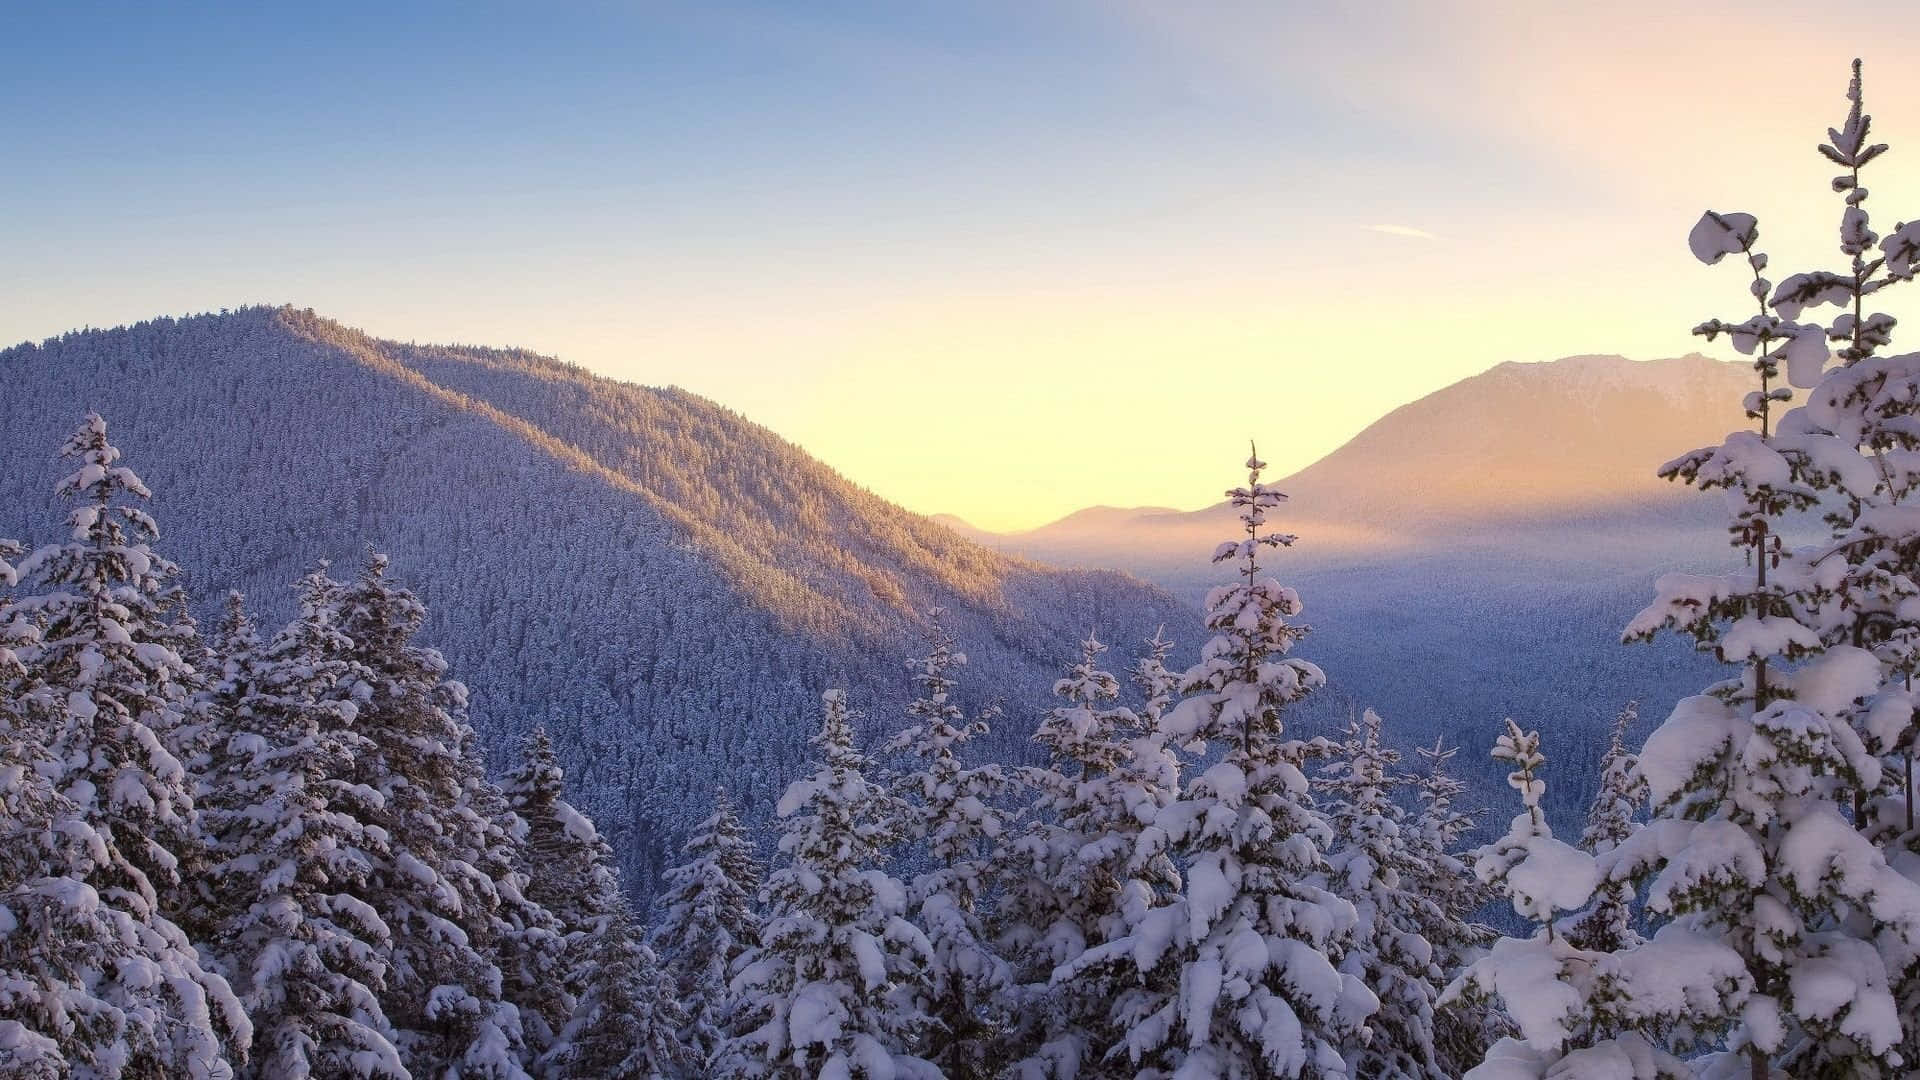 Impresionantesárboles De Invierno En Un Sereno Paisaje Nevado Fondo de pantalla